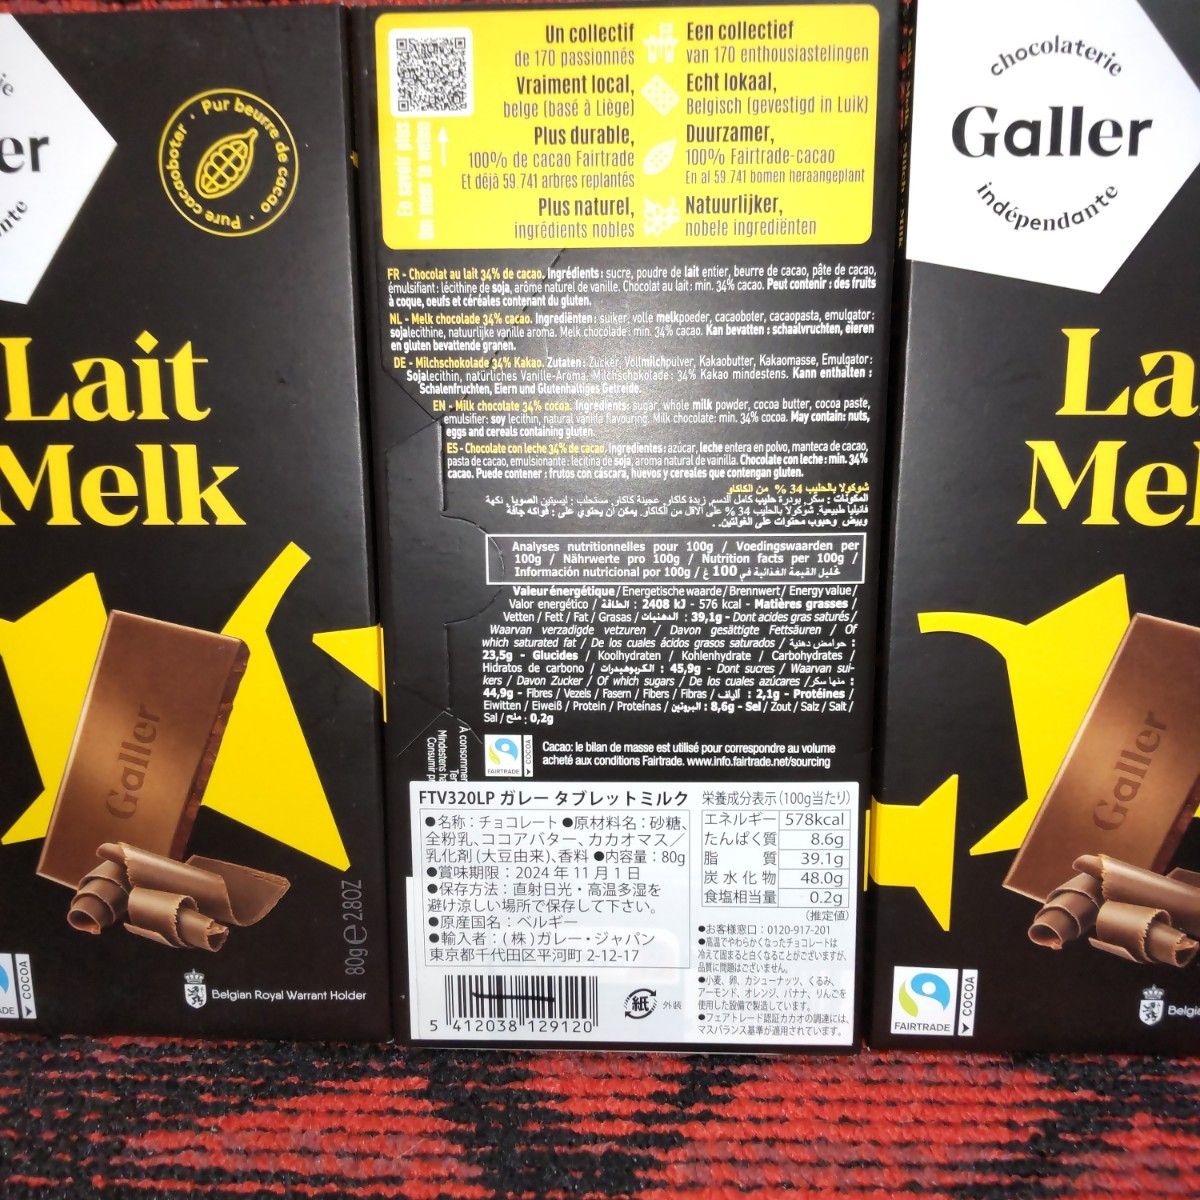 Galler ガレー タブレット ホワイトラズベリー&ミルク ベルギーチョコレート 4個セット